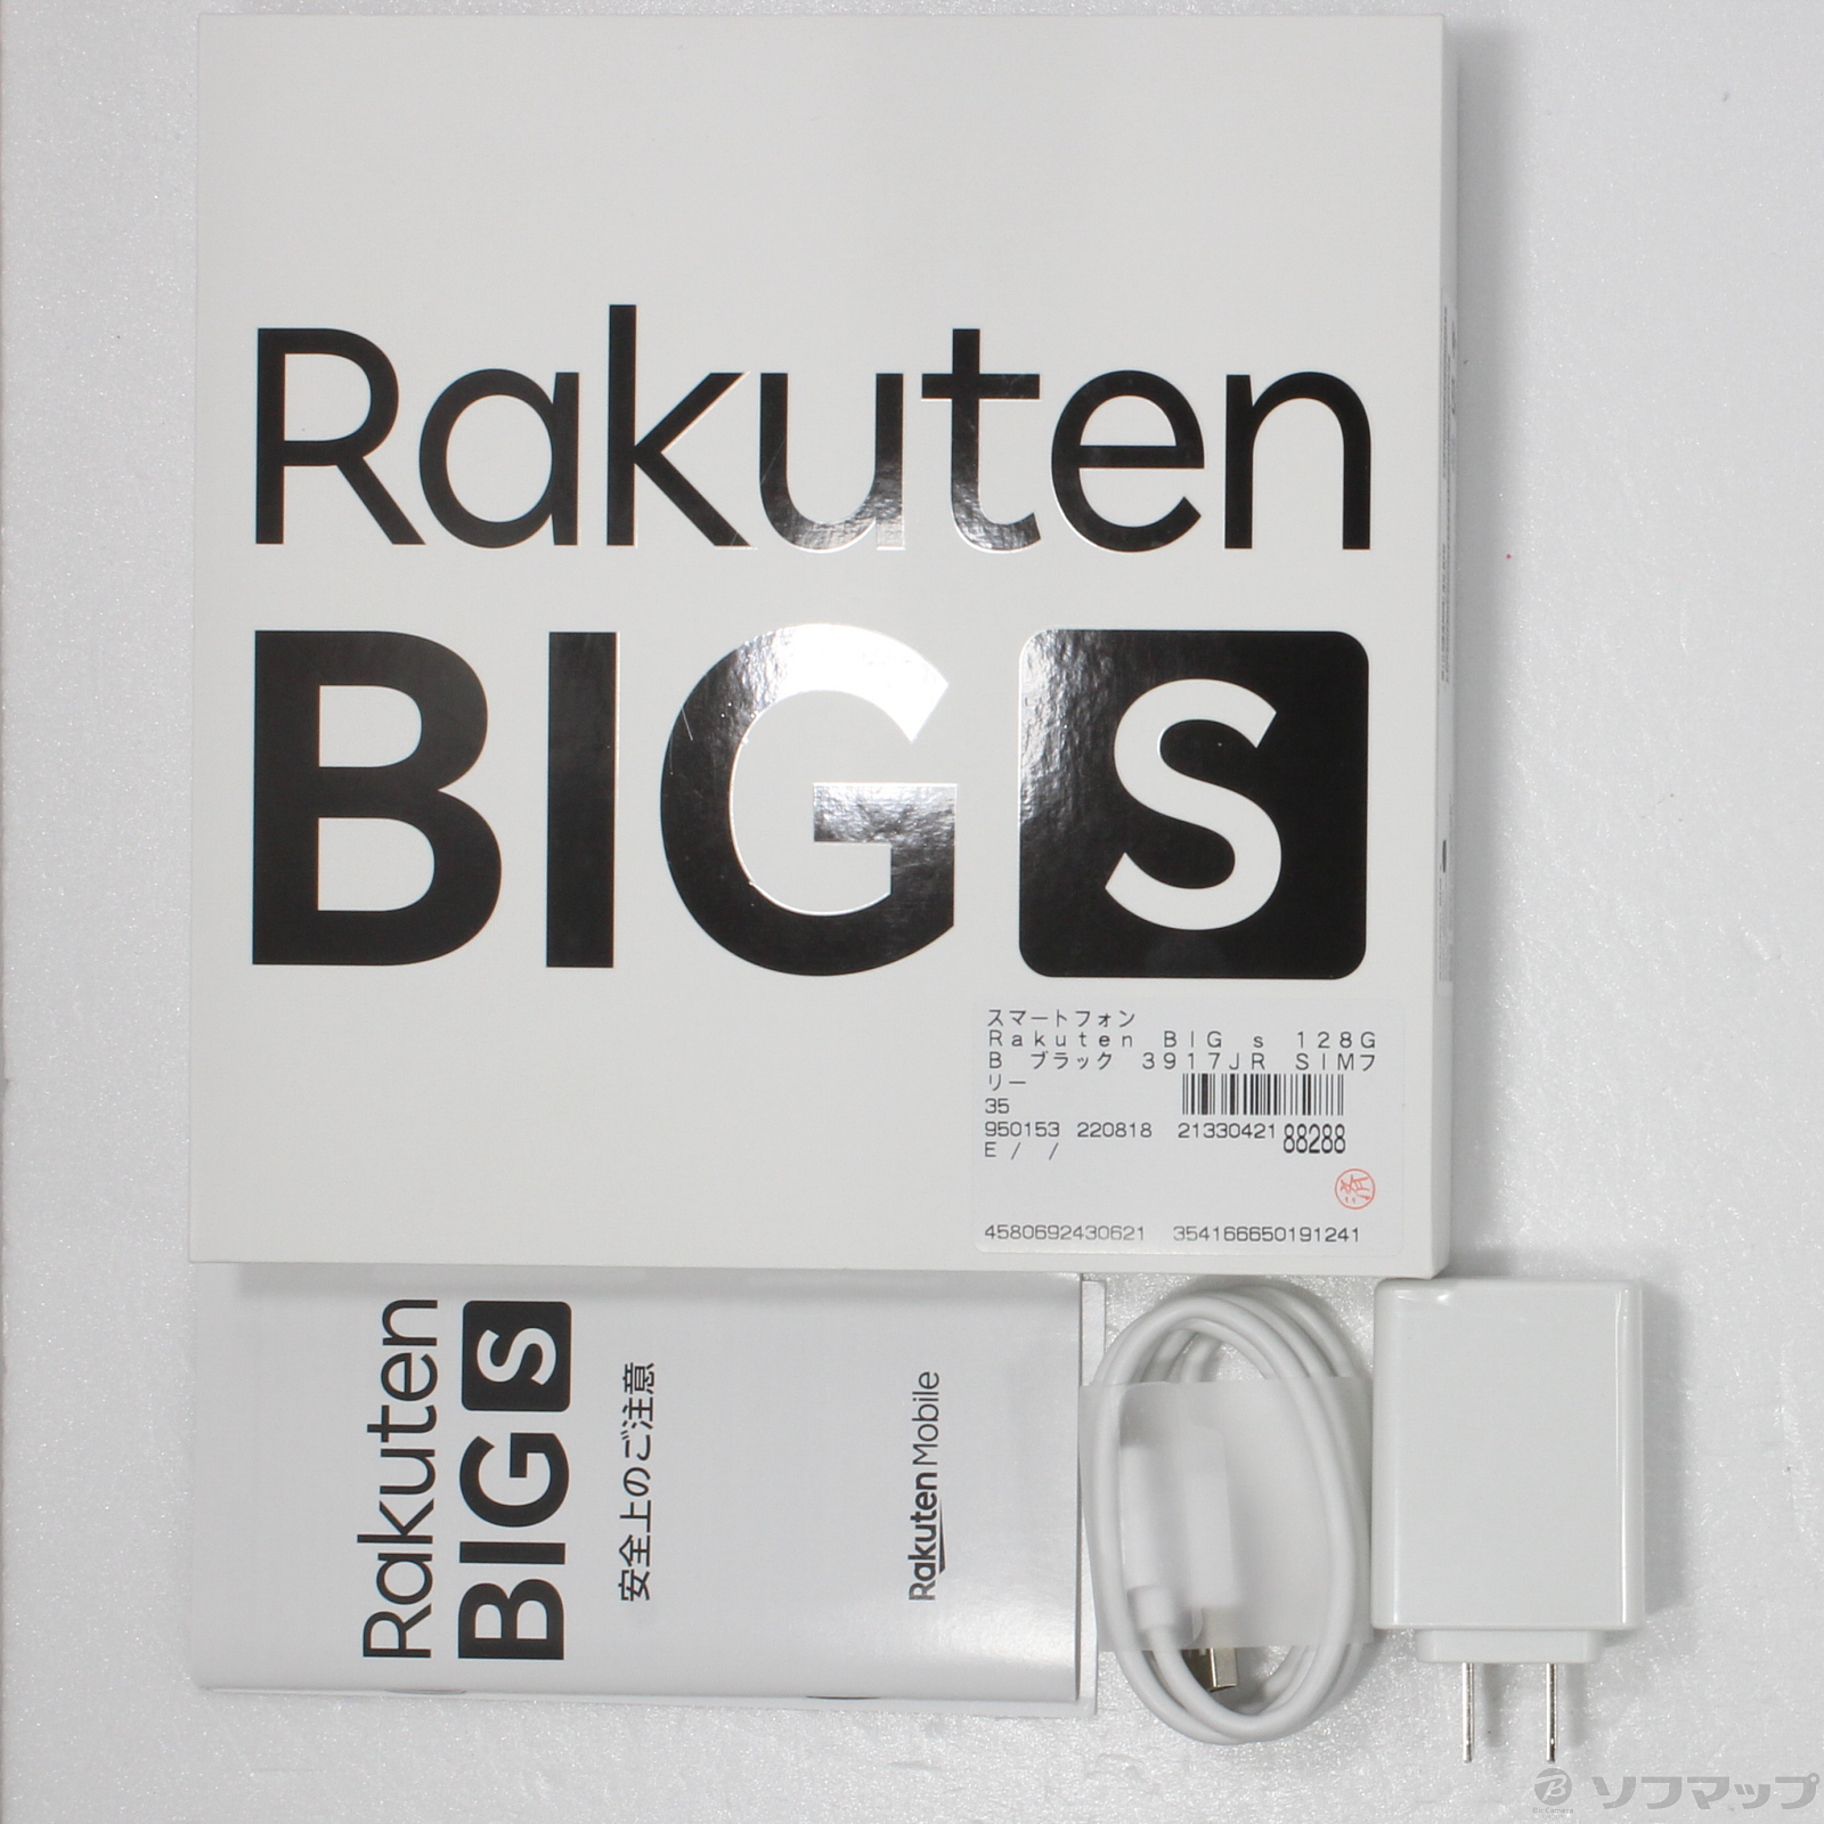 中古】Rakuten BIG s 128GB ブラック 3917JR SIMフリー ◇12/26(月